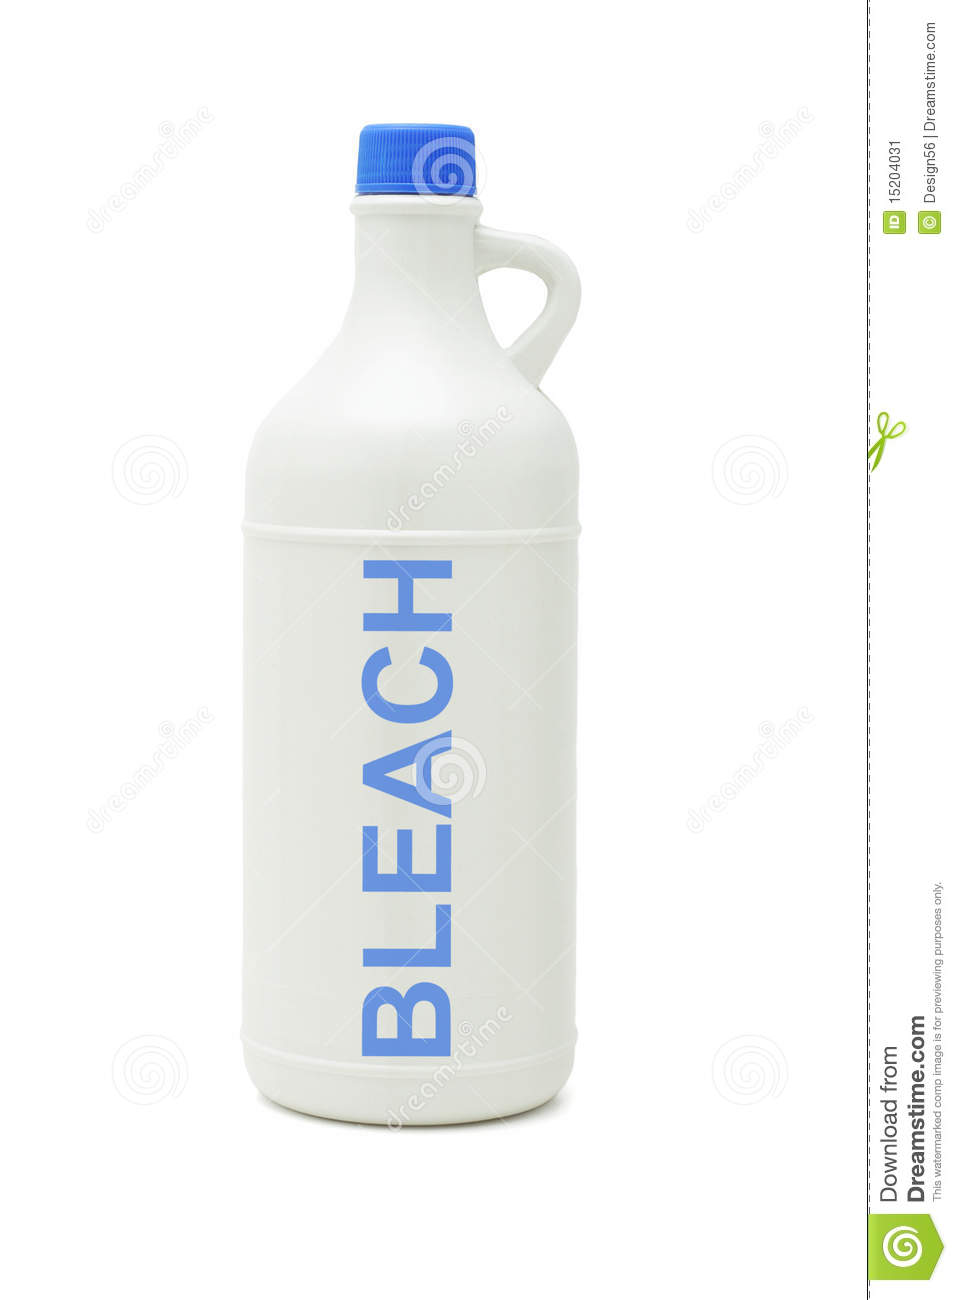 Bottle Of Household Bleach Stock Image   Image  15204031